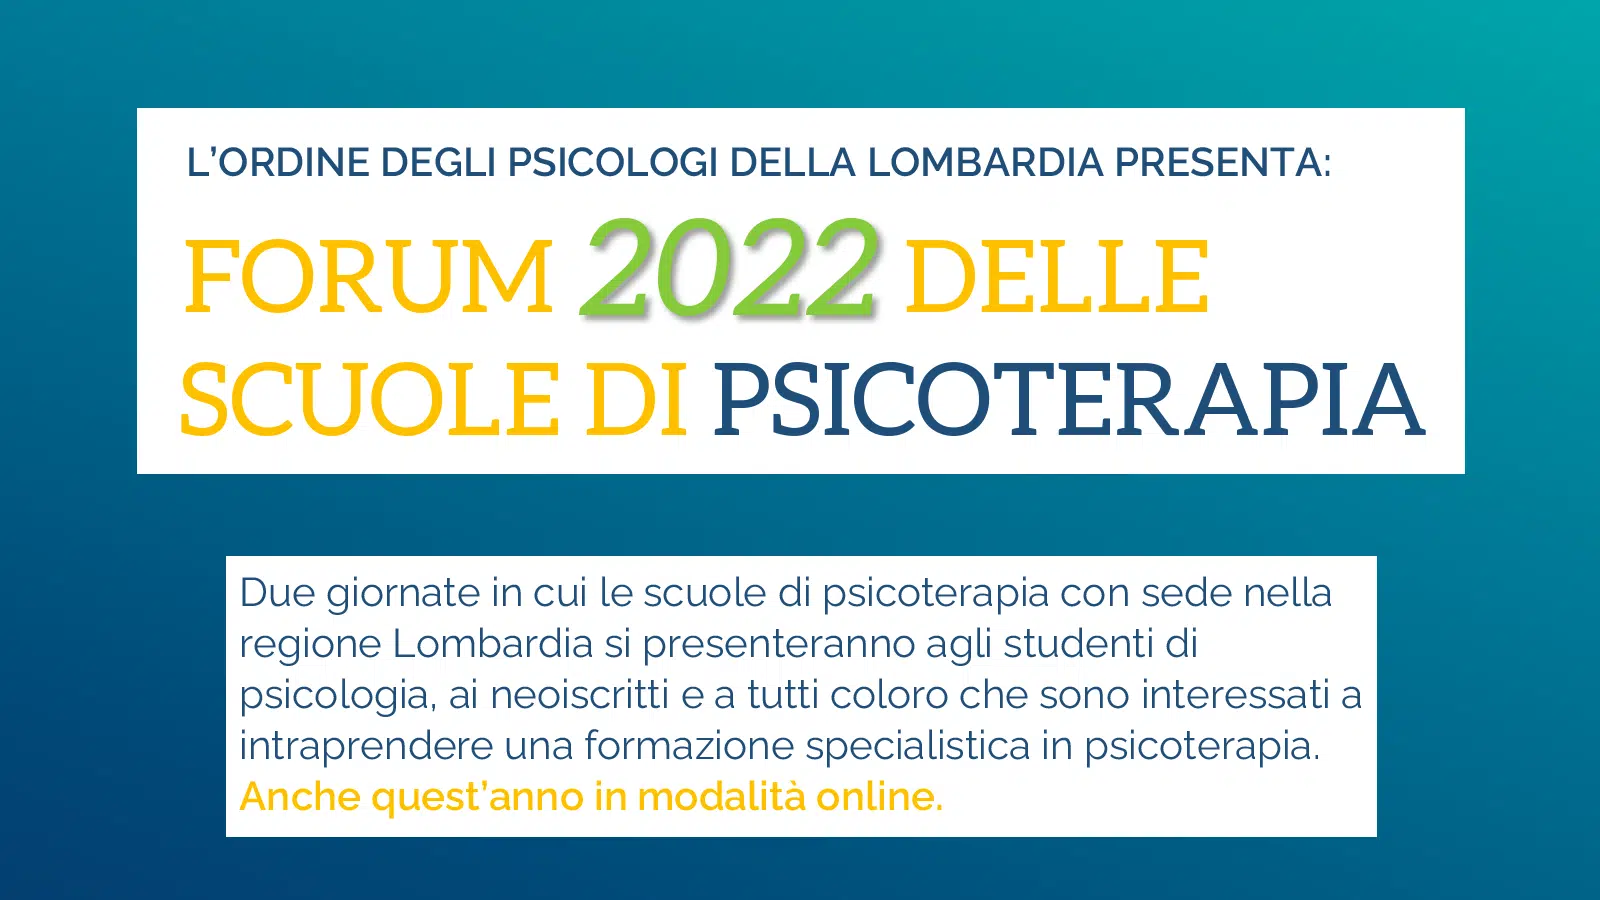 FORUM 2022 SCUOLE DI PSICOTERAPIA - 1600X900